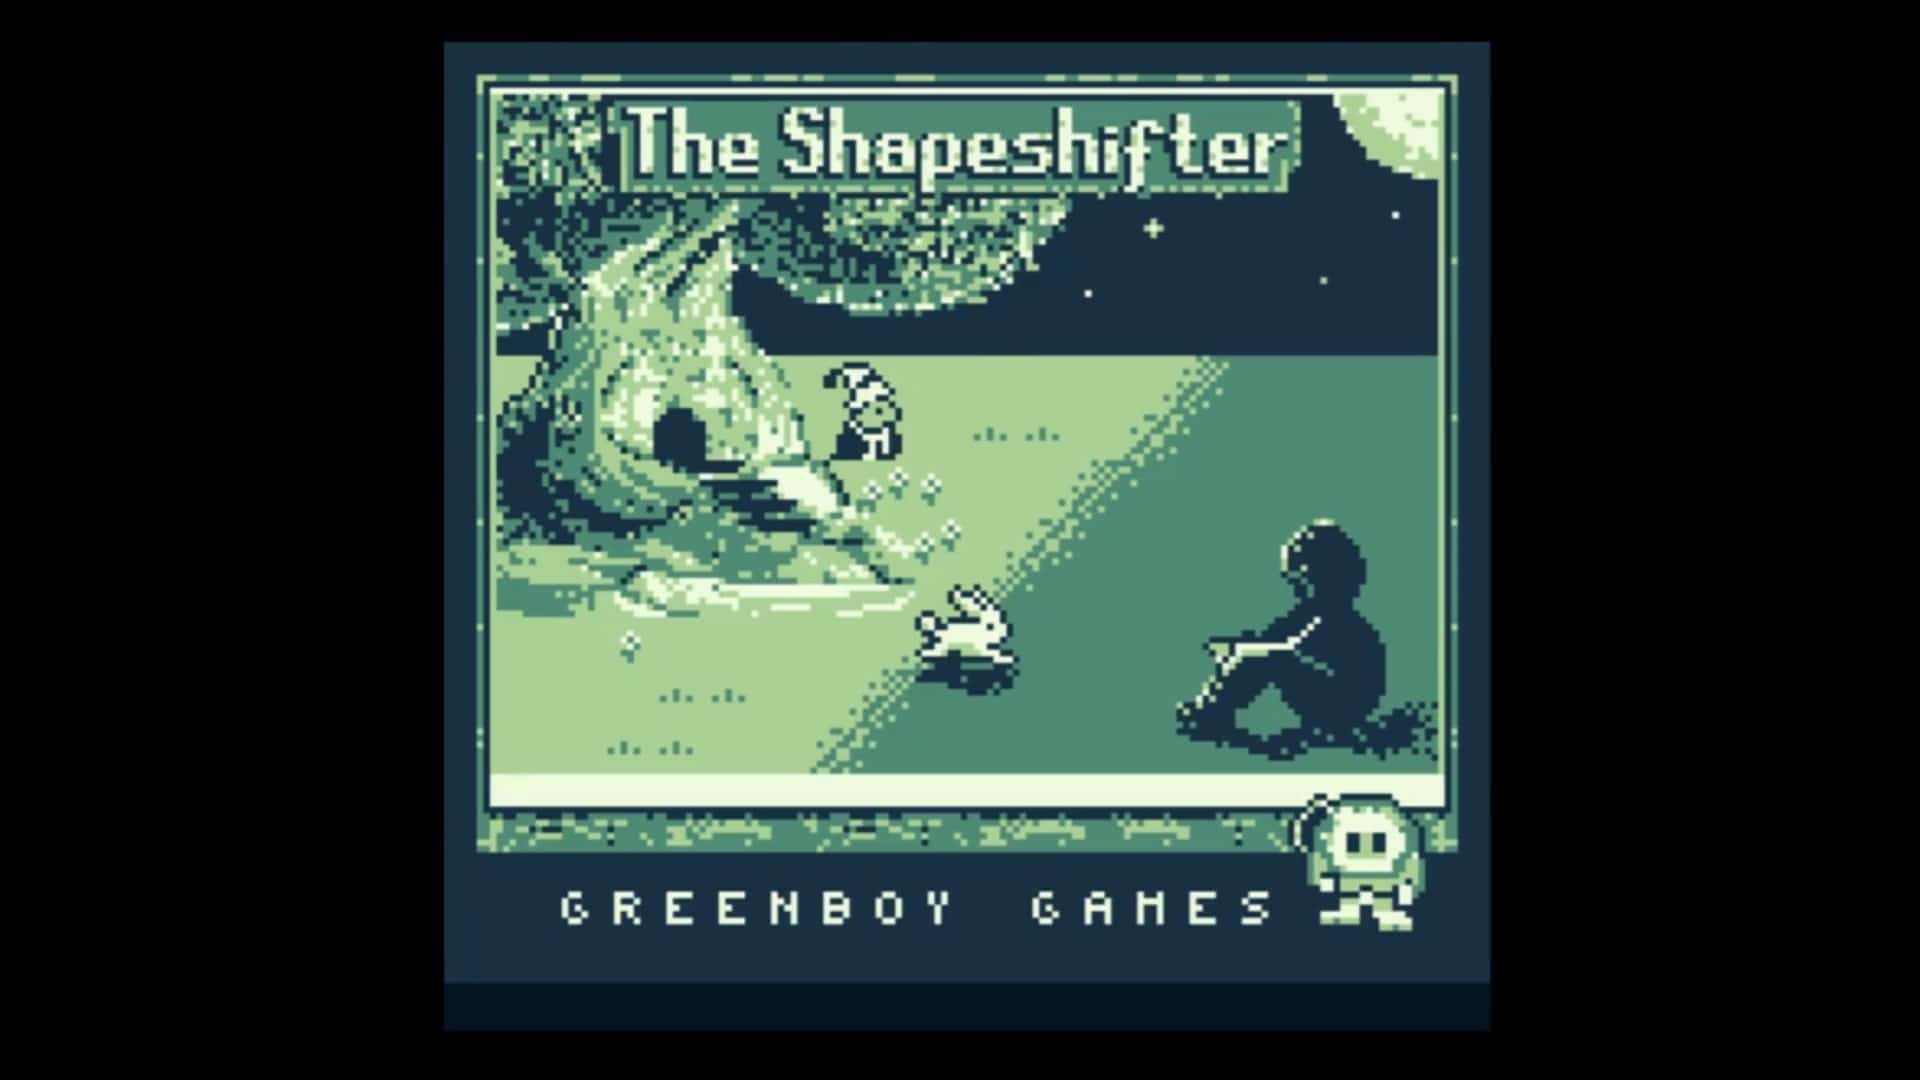 The Shapeshifter llegará a Game Boy tras alcanzar su primer objetivo de financiación en Kickstarter